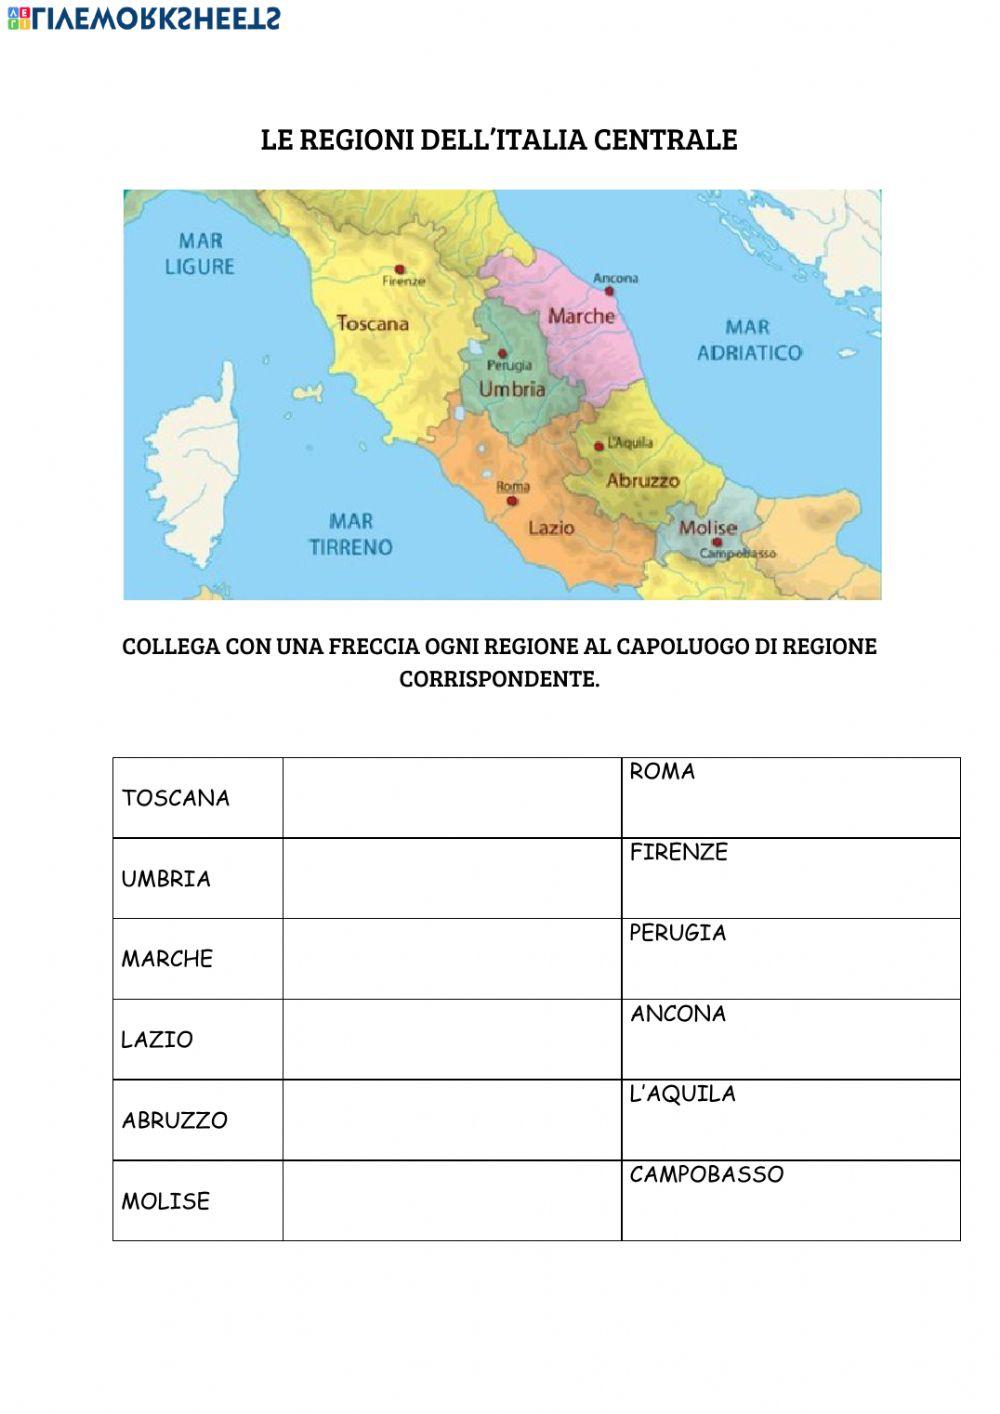 Le regioni del centro Italia